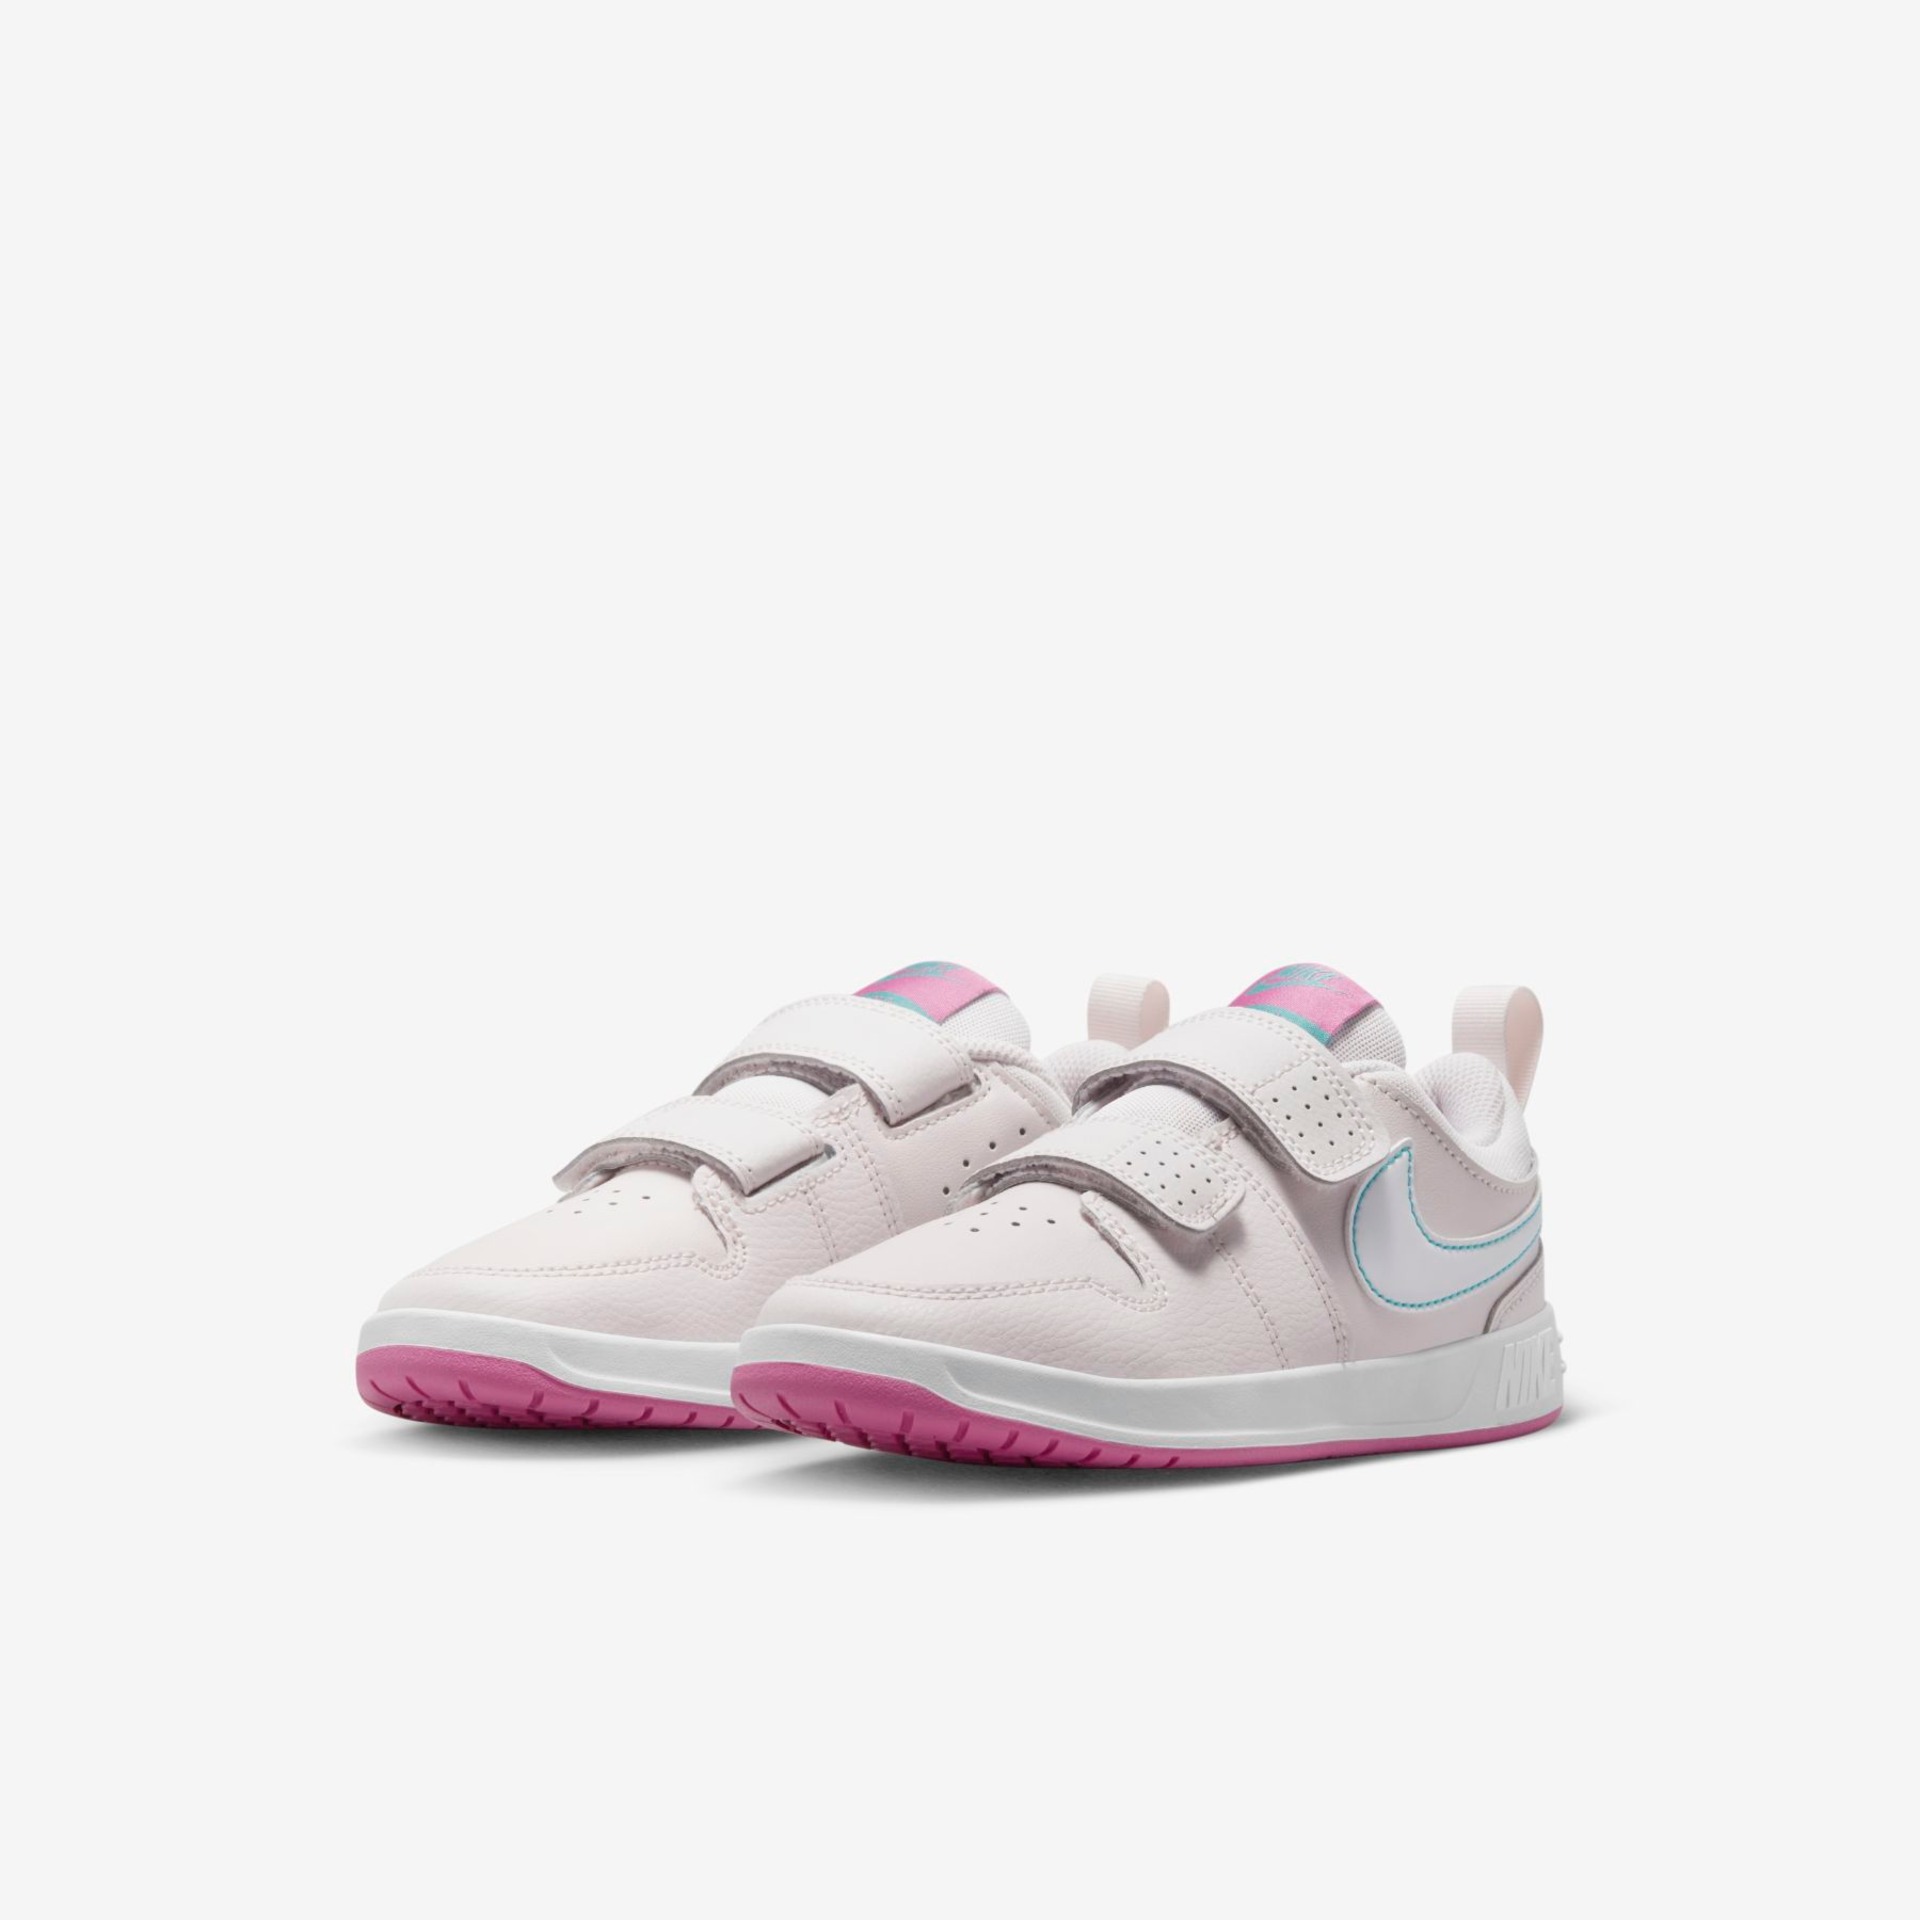 Tênis Nike Pico 5 Infantil - Foto 5